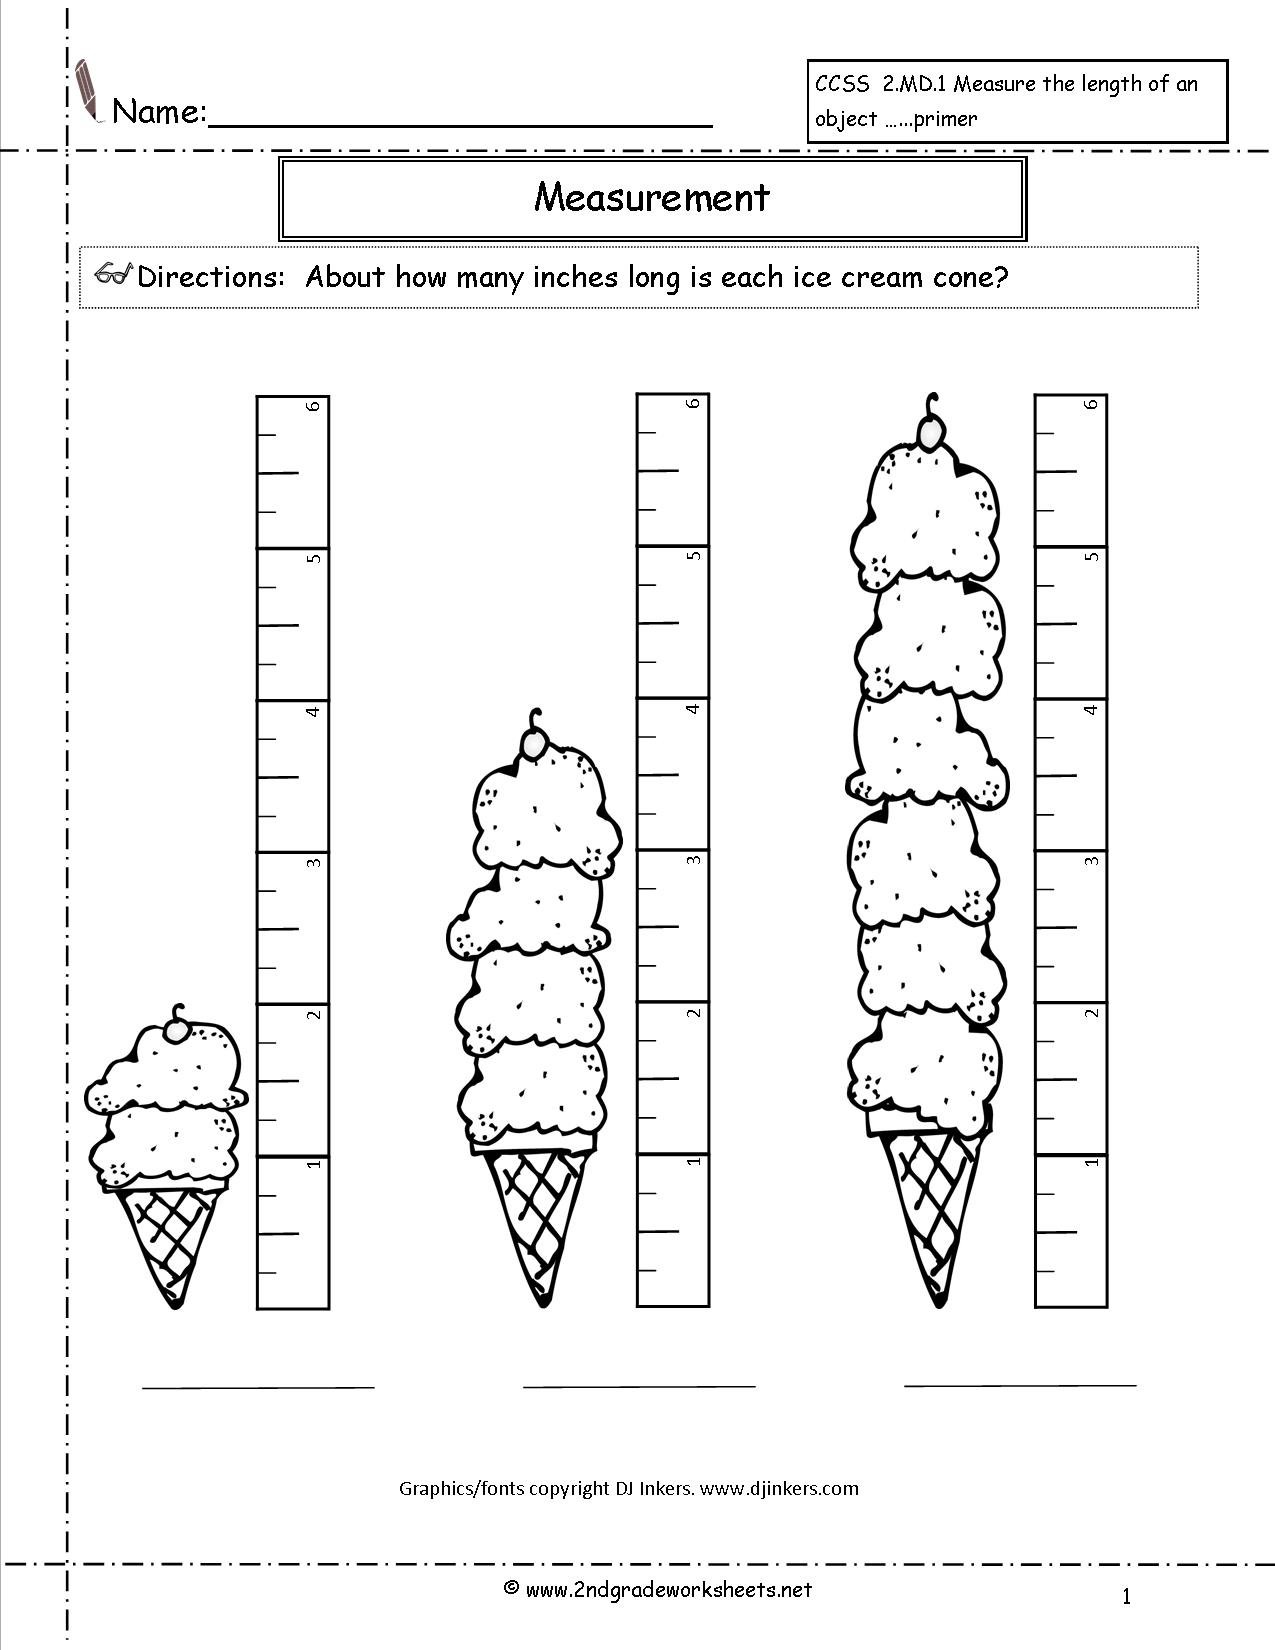 Measurement Math Worksheets For 2nd Grade The Best Worksheets